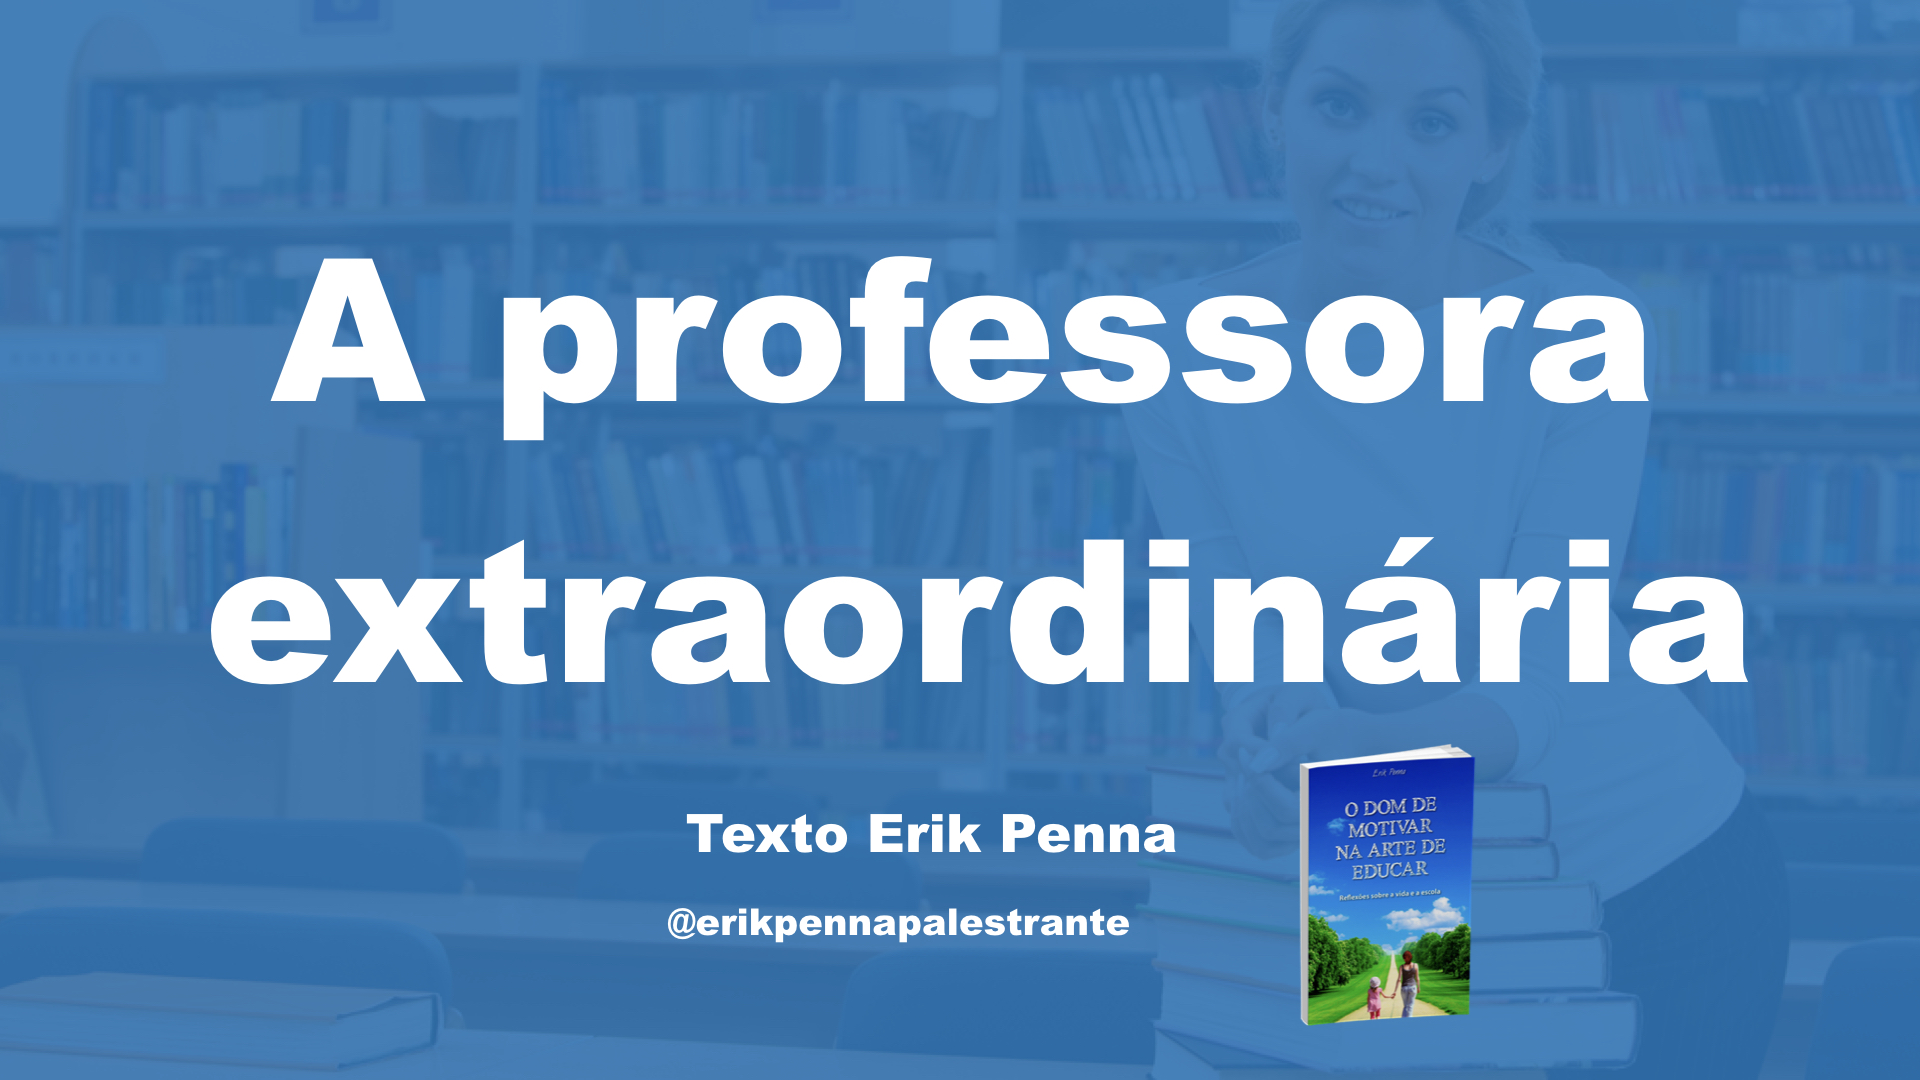 Palestra Motivacional para Professores. Erik Penna é No 1 como Palestrante de Motivação no Google e no texto aborda a professora extraordinária ensina mais do que um conteúdo.